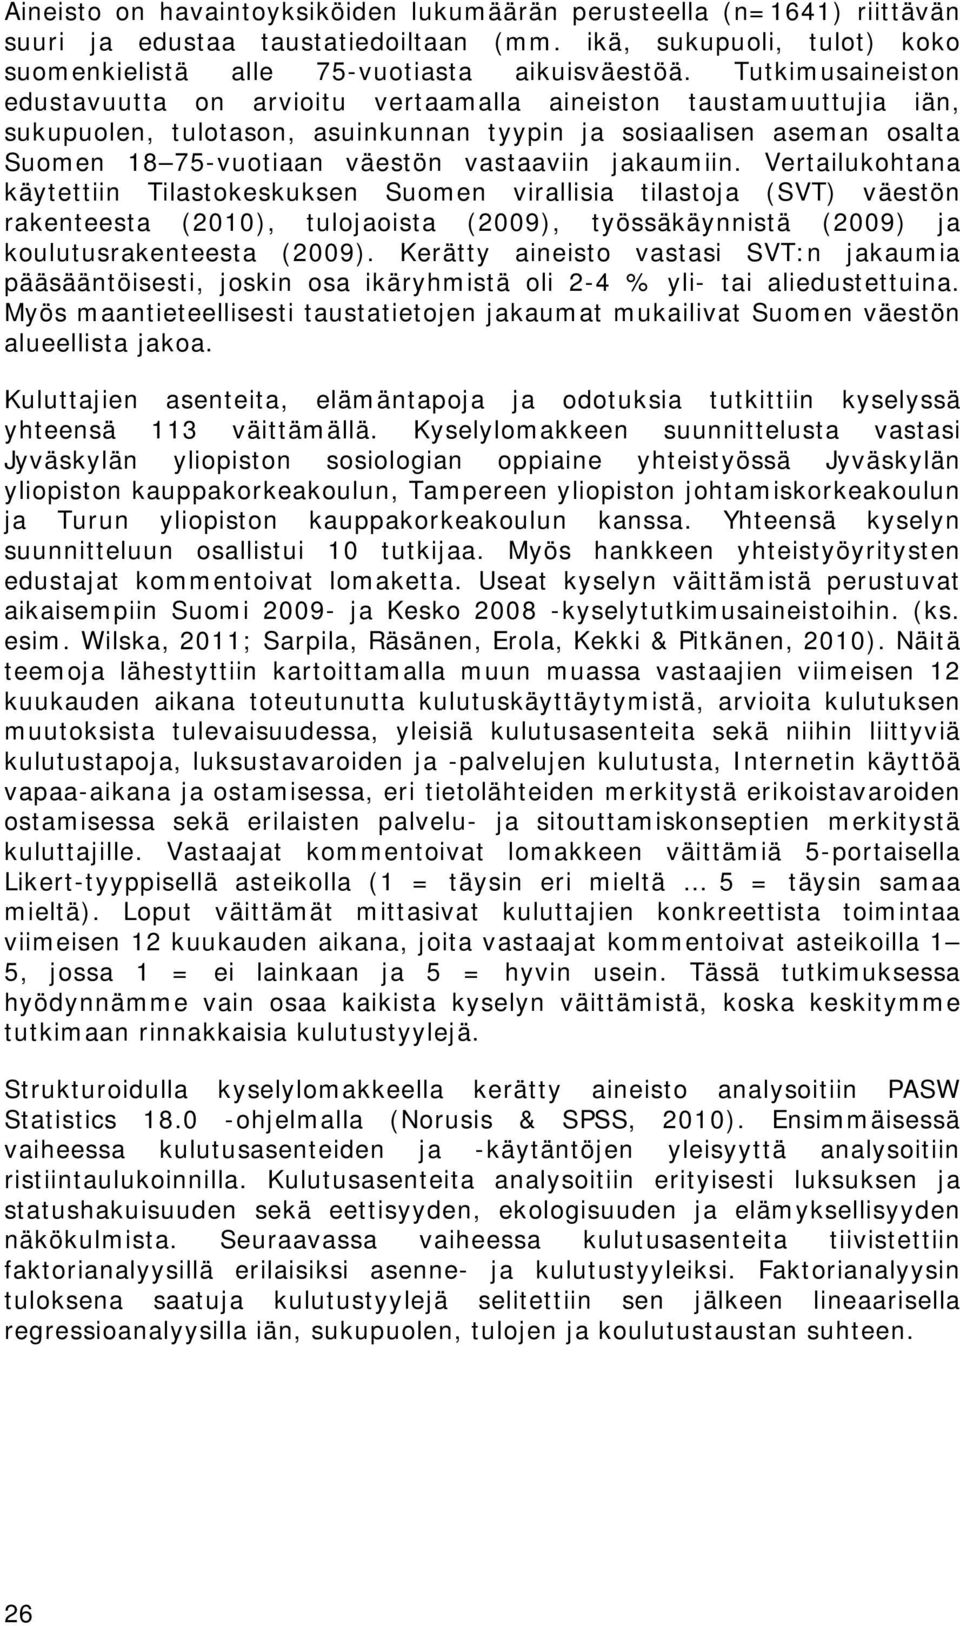 jakaumiin. Vertailukohtana käytettiin Tilastokeskuksen Suomen virallisia tilastoja (SVT) väestön rakenteesta (2010), tulojaoista (2009), työssäkäynnistä (2009) ja koulutusrakenteesta (2009).